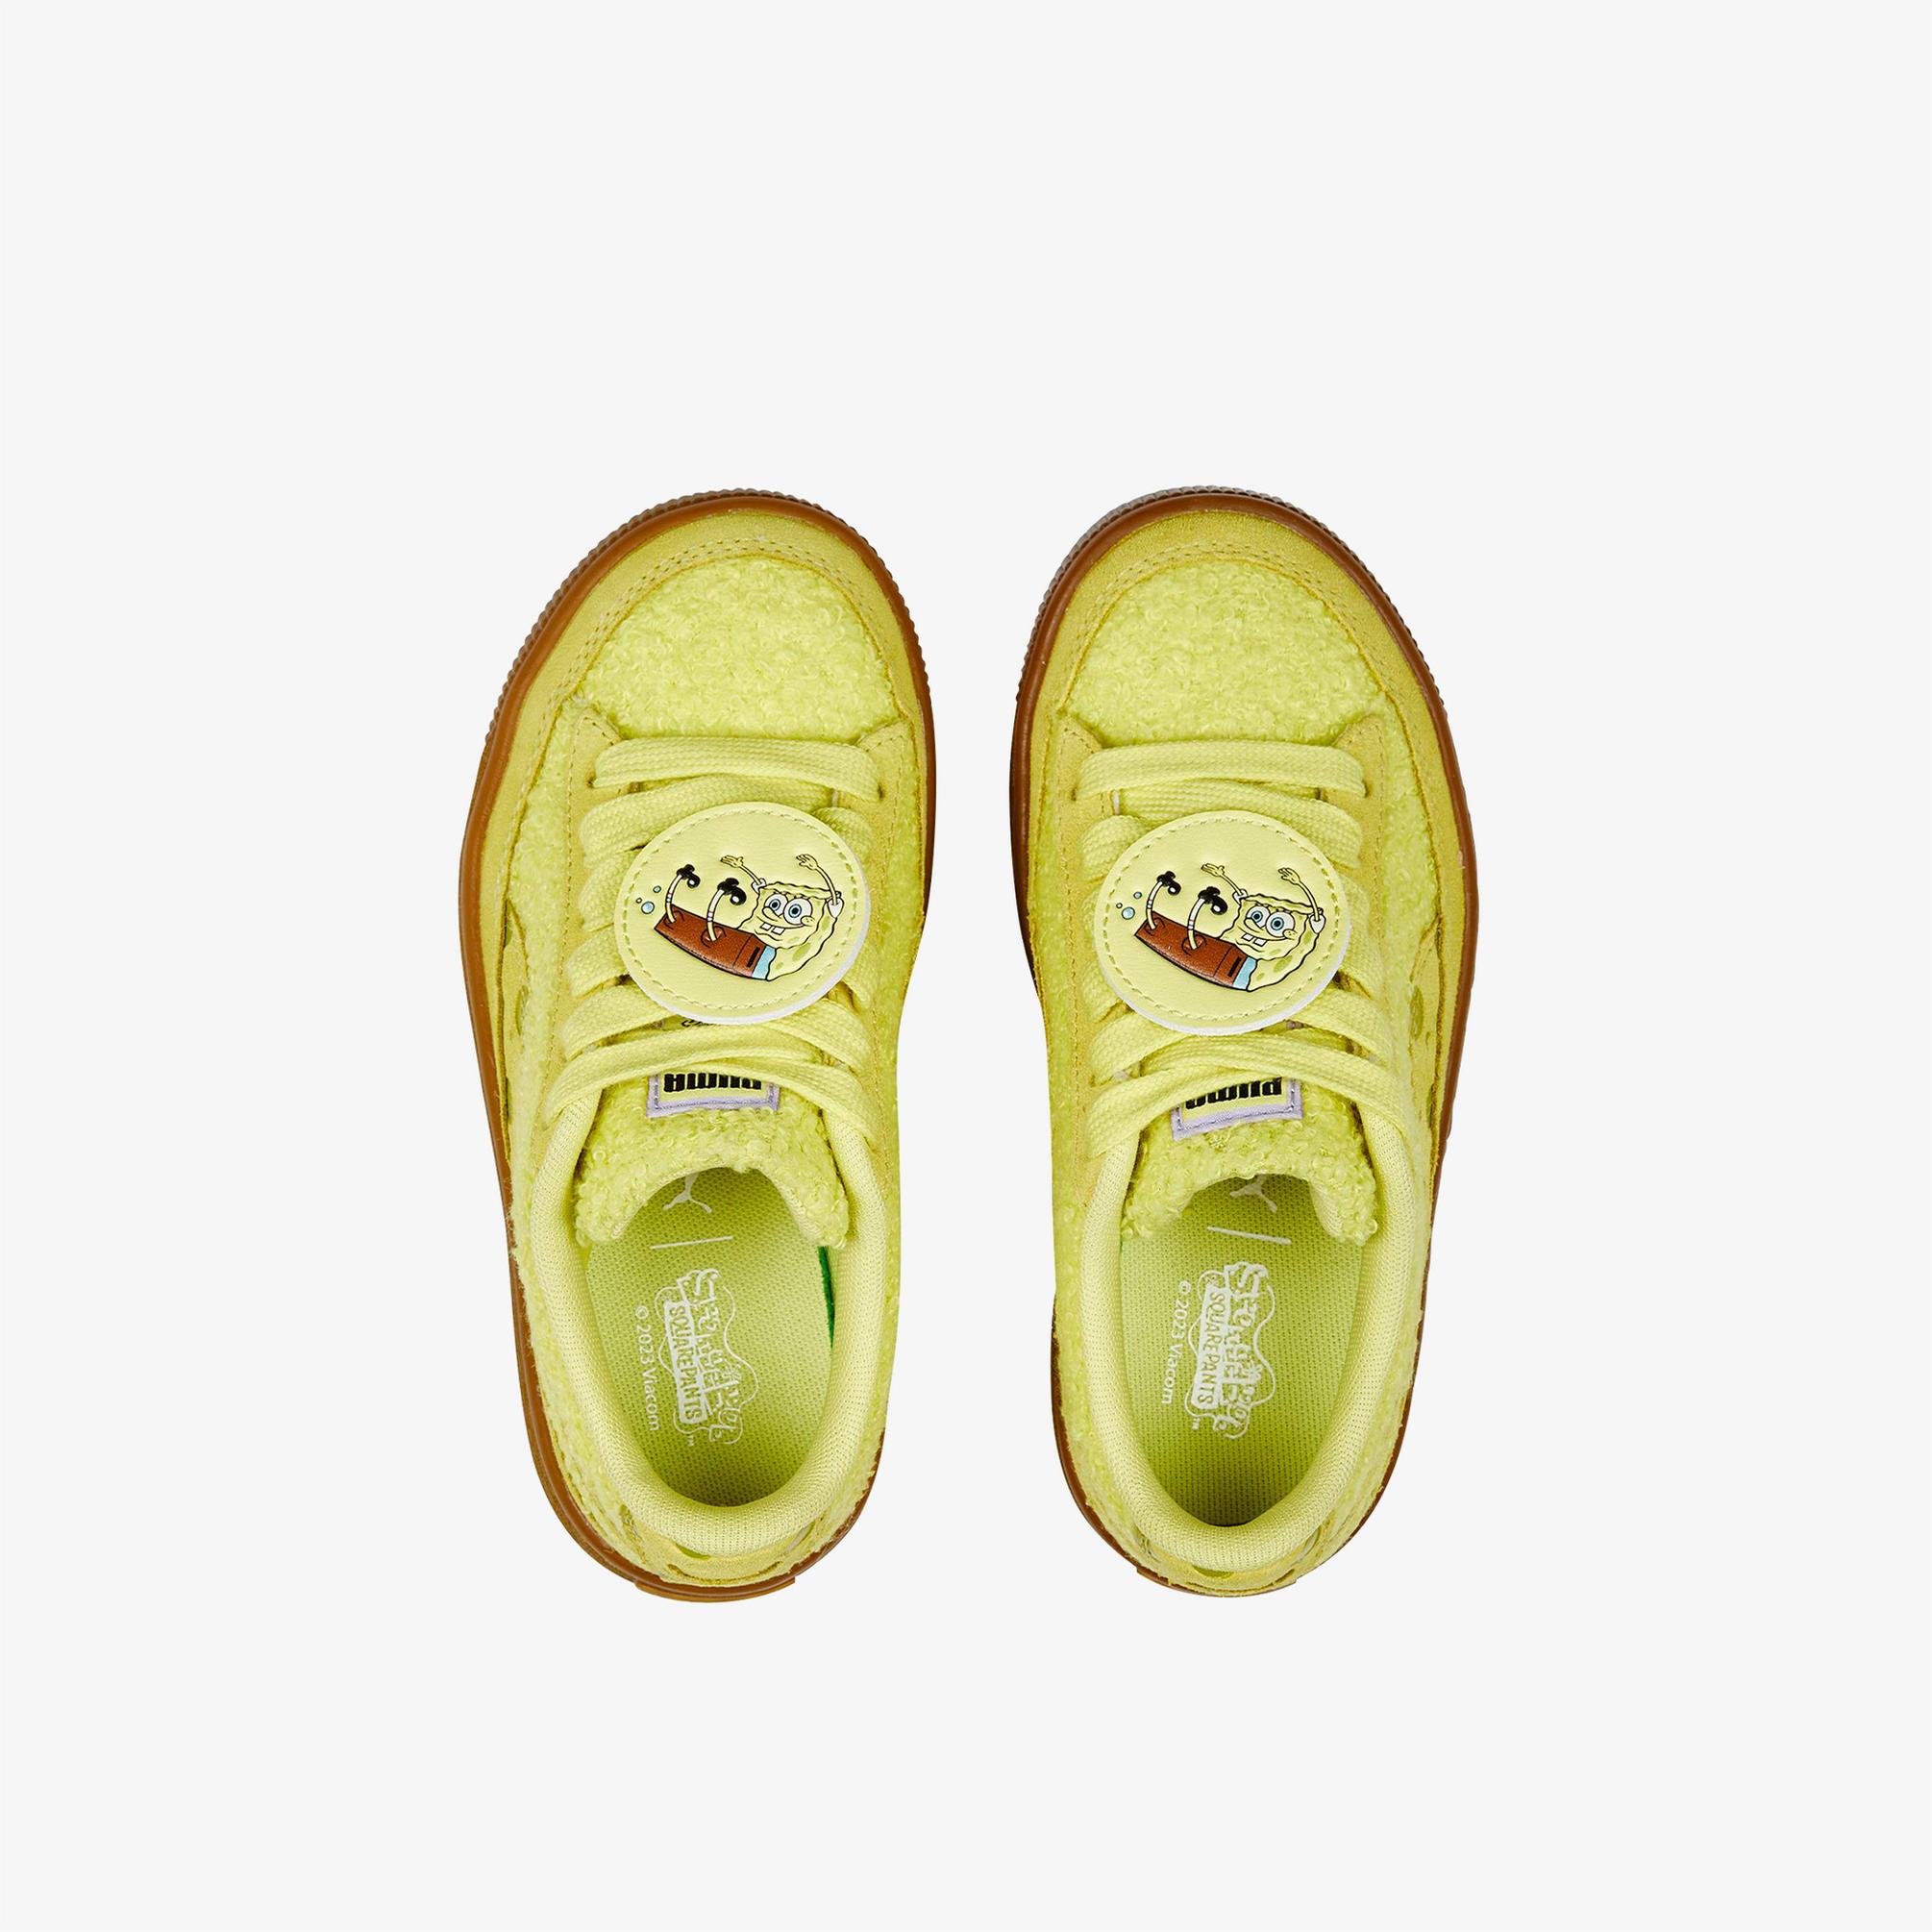  Puma x Spongebob PS Suede Çocuk Sarı Spor Ayakkabı